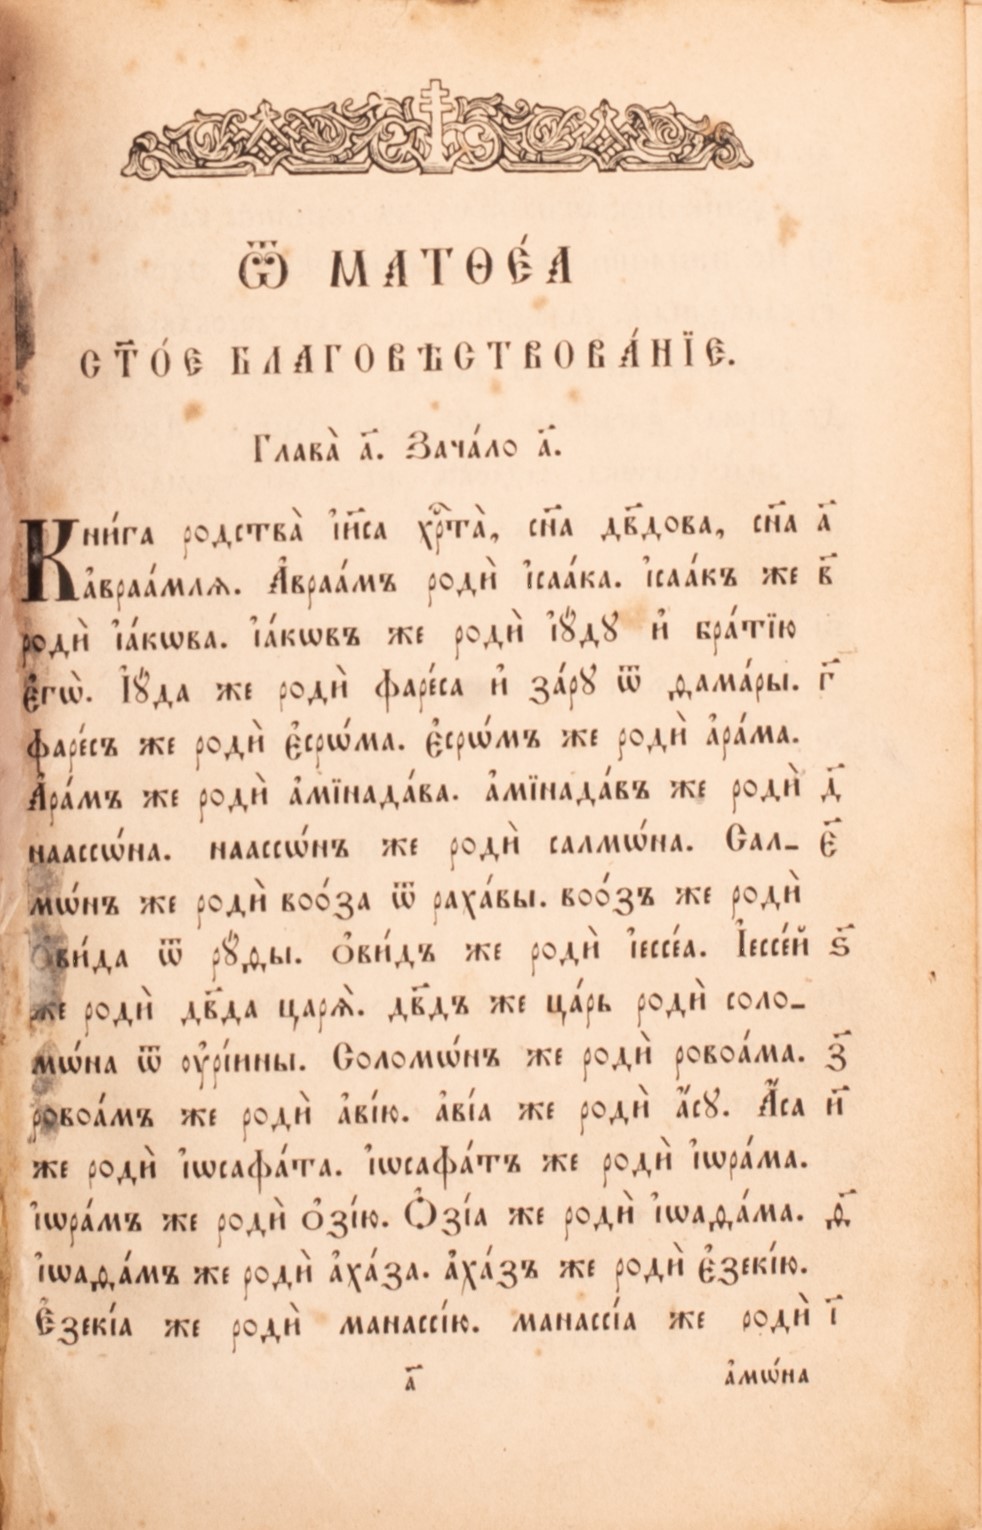 Bibbia slava in cirillico - Image 5 of 5